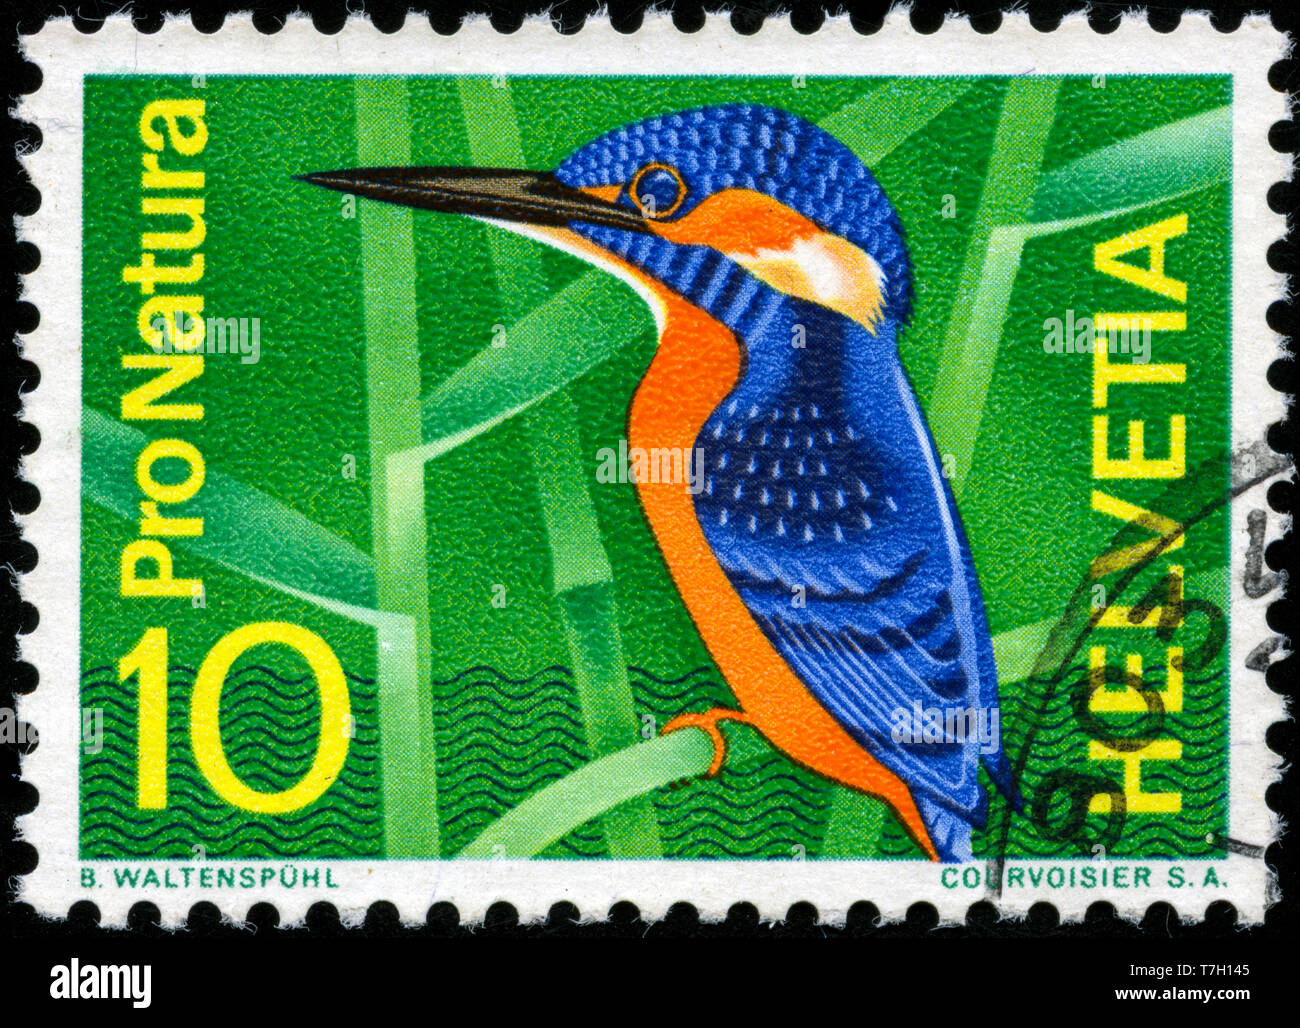 Francobollo dalla Svizzera in materia di conservazione della natura serie emesse nel 1966 Foto Stock